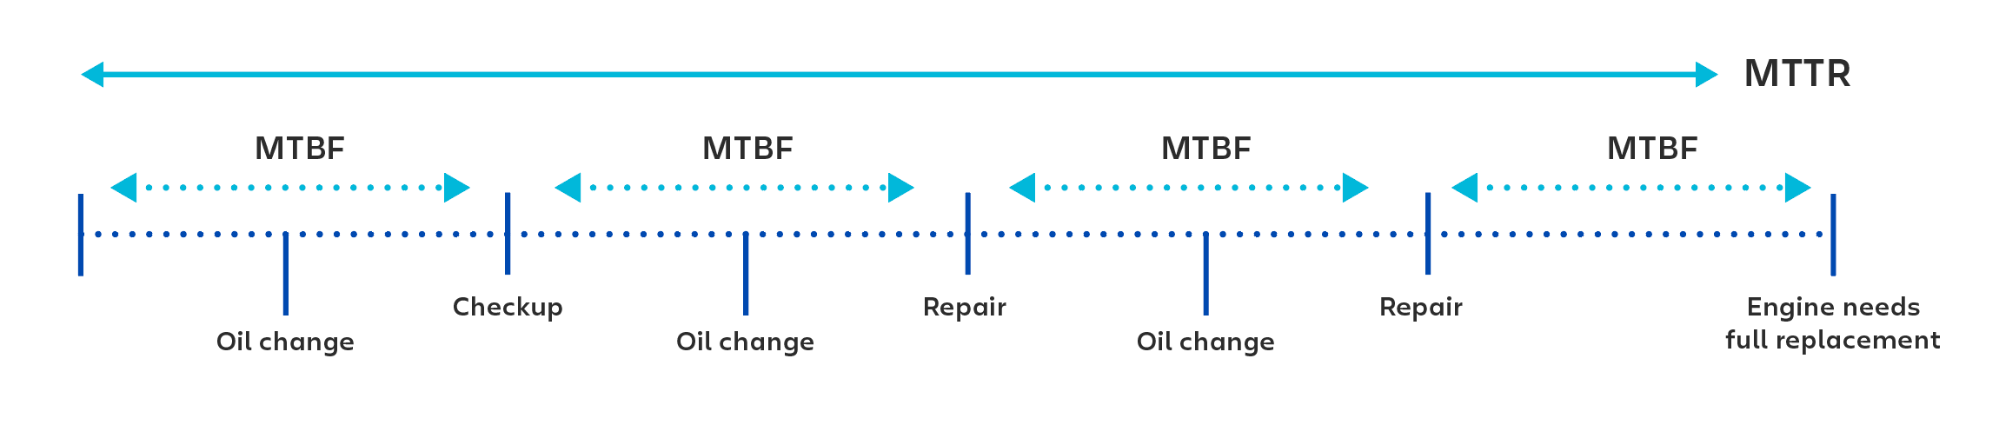 Ejemplo visual del uso de MTBF (tiempo medio entre fallos) al calcular el tiempo entre cada comprobación o reparación.